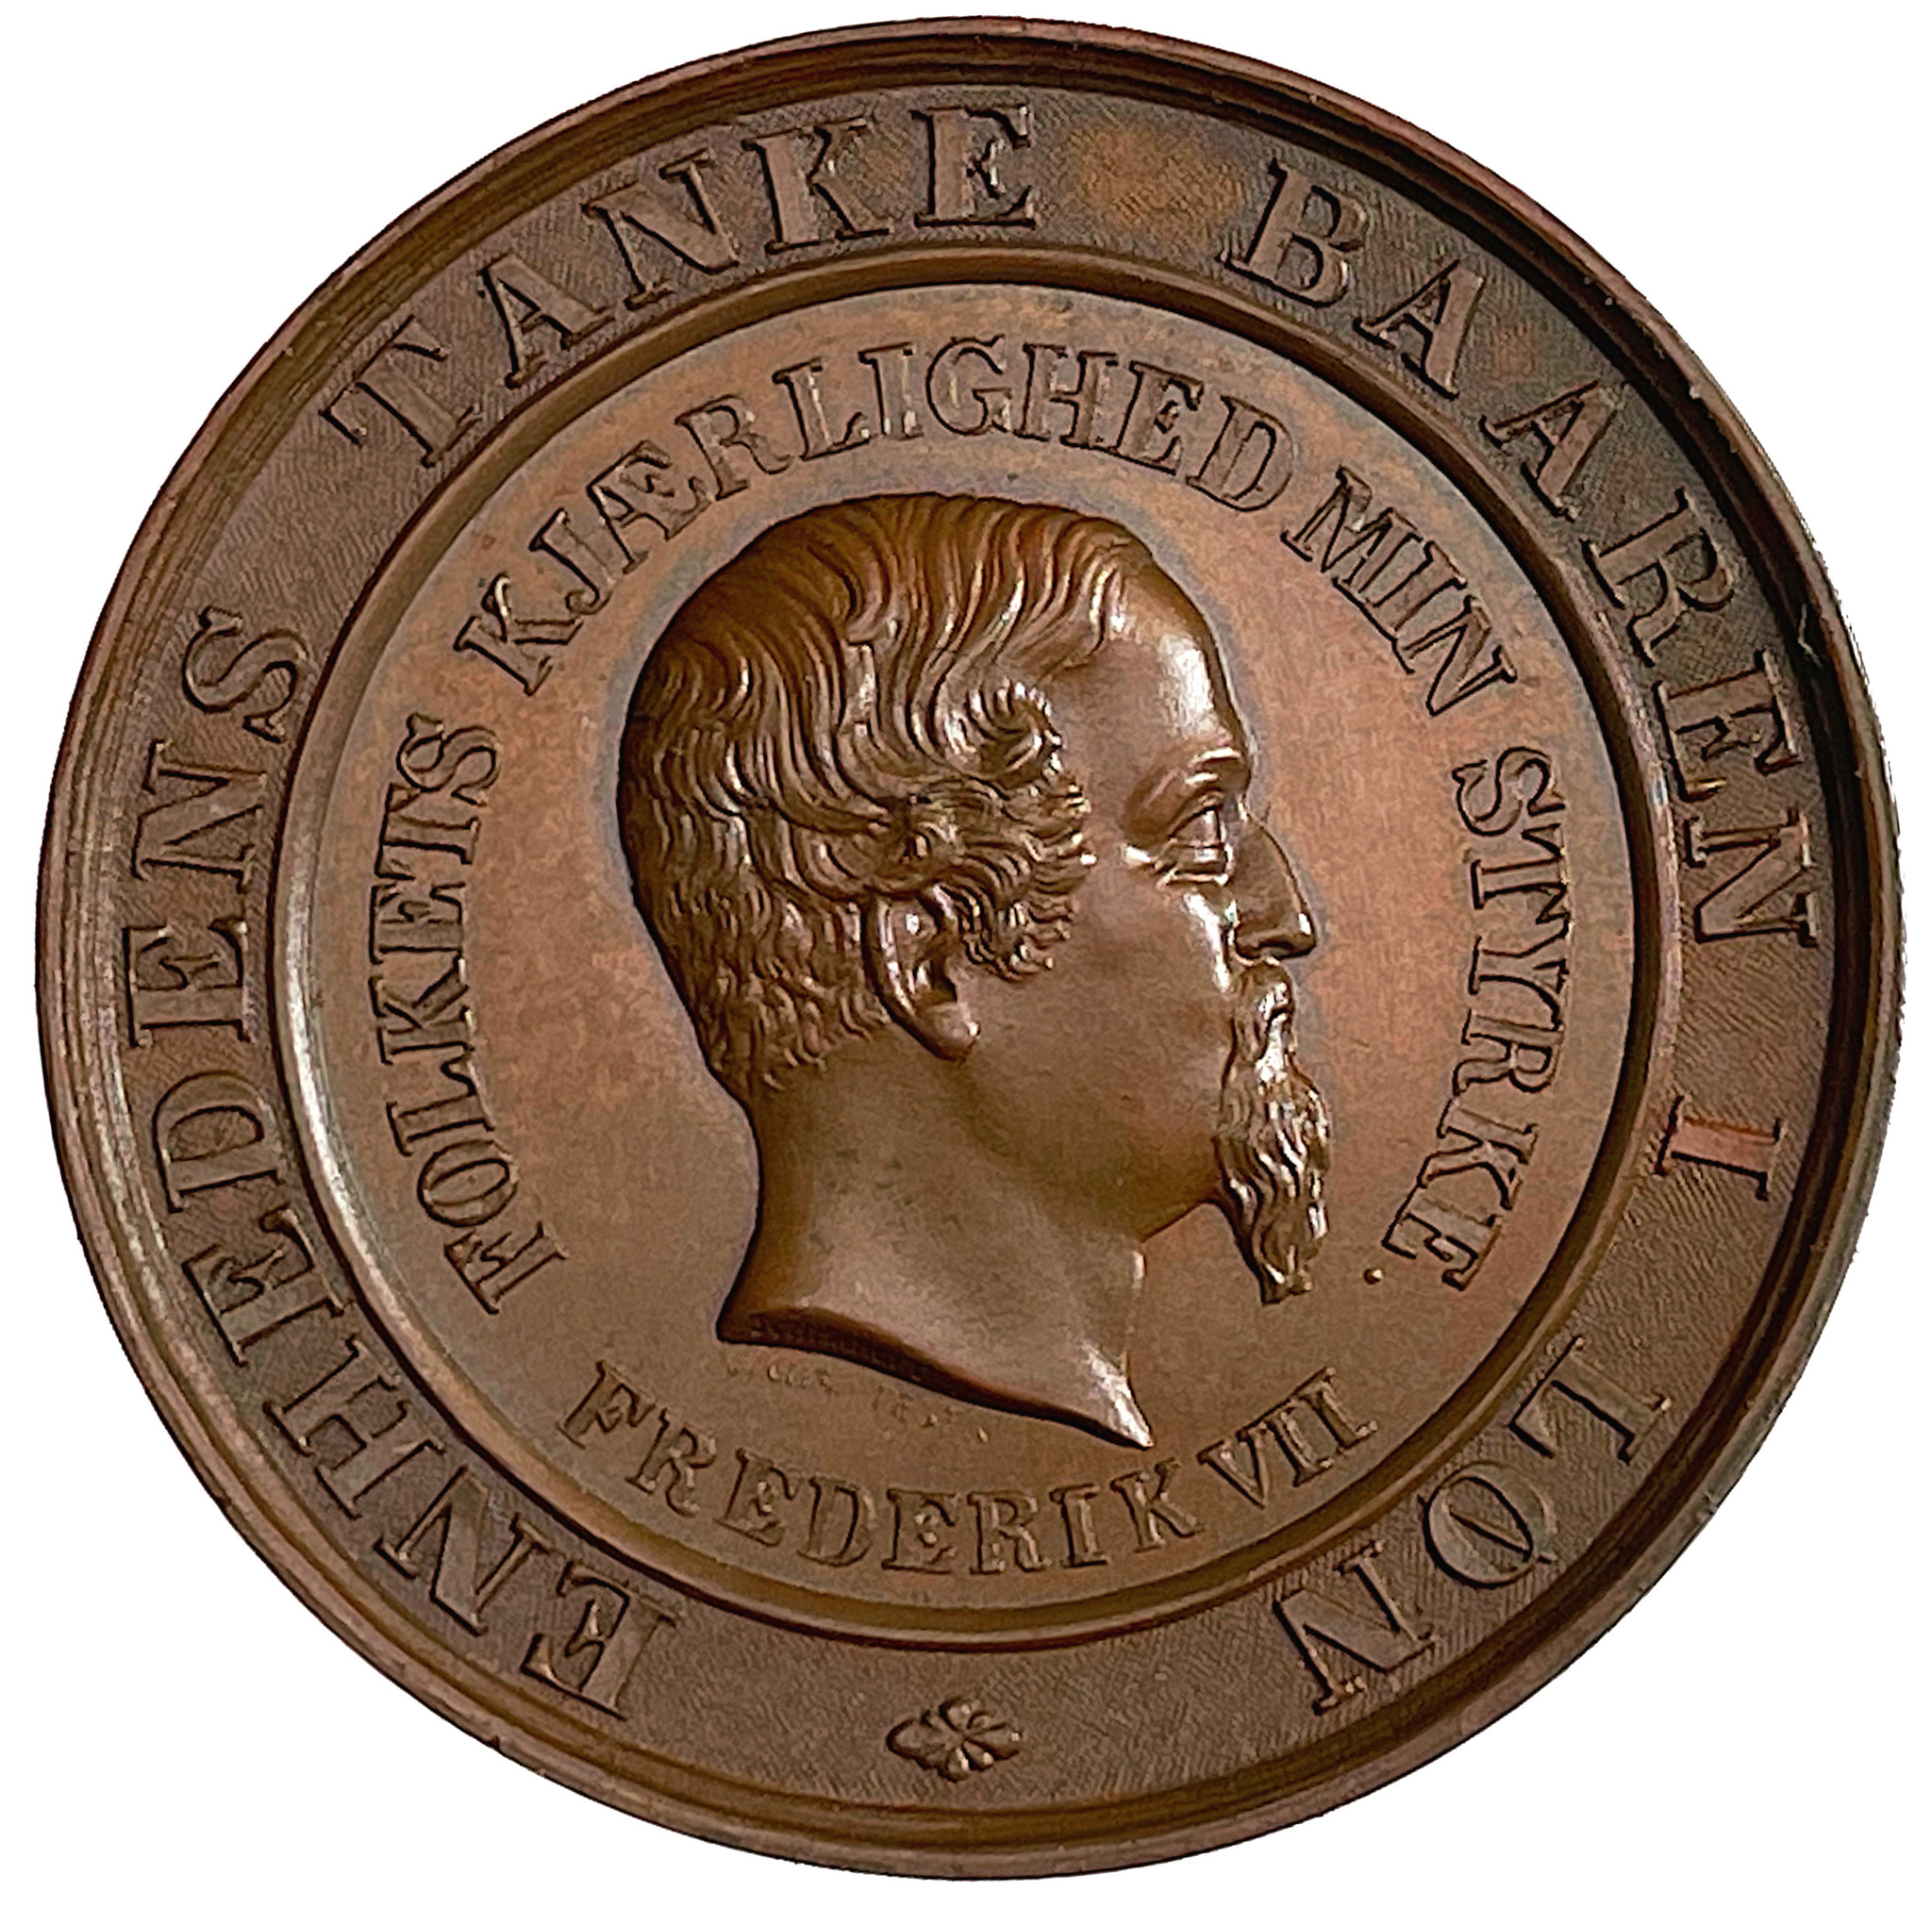 Konungens besök hos Danmarks konung Fredrik VII i juli månad 1862 av Georg Ludvig Friedrich Schmalfeld - MYCKET SÄLLSYNT - RRR